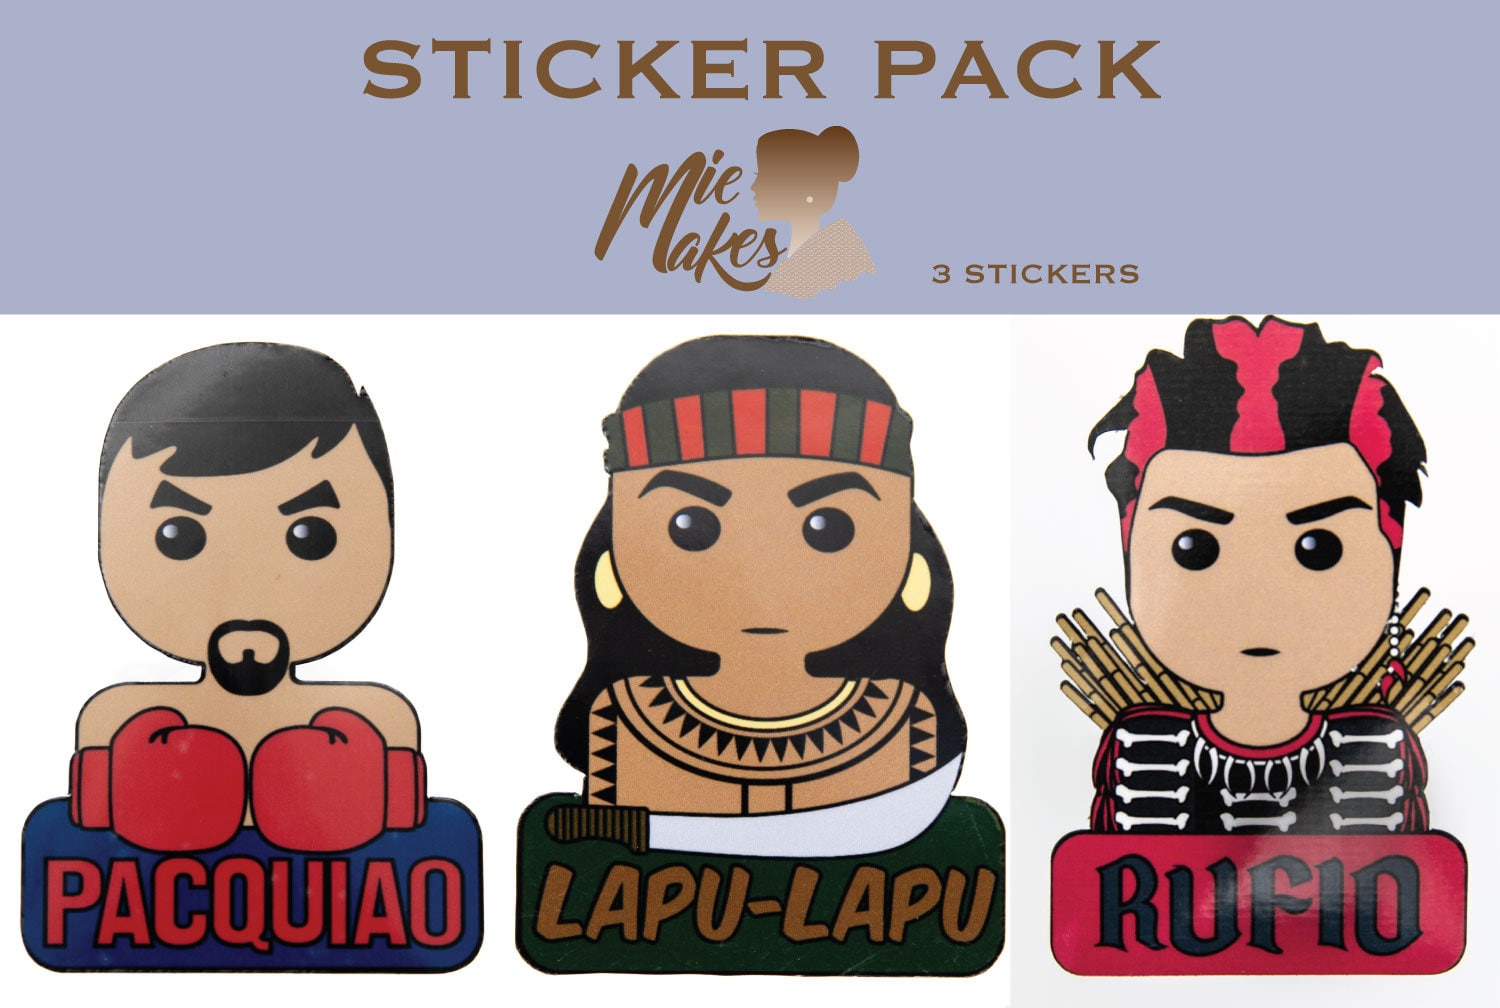 Filipino Warriors Sticker Pack, Filipino, Pinoy, Philippines,